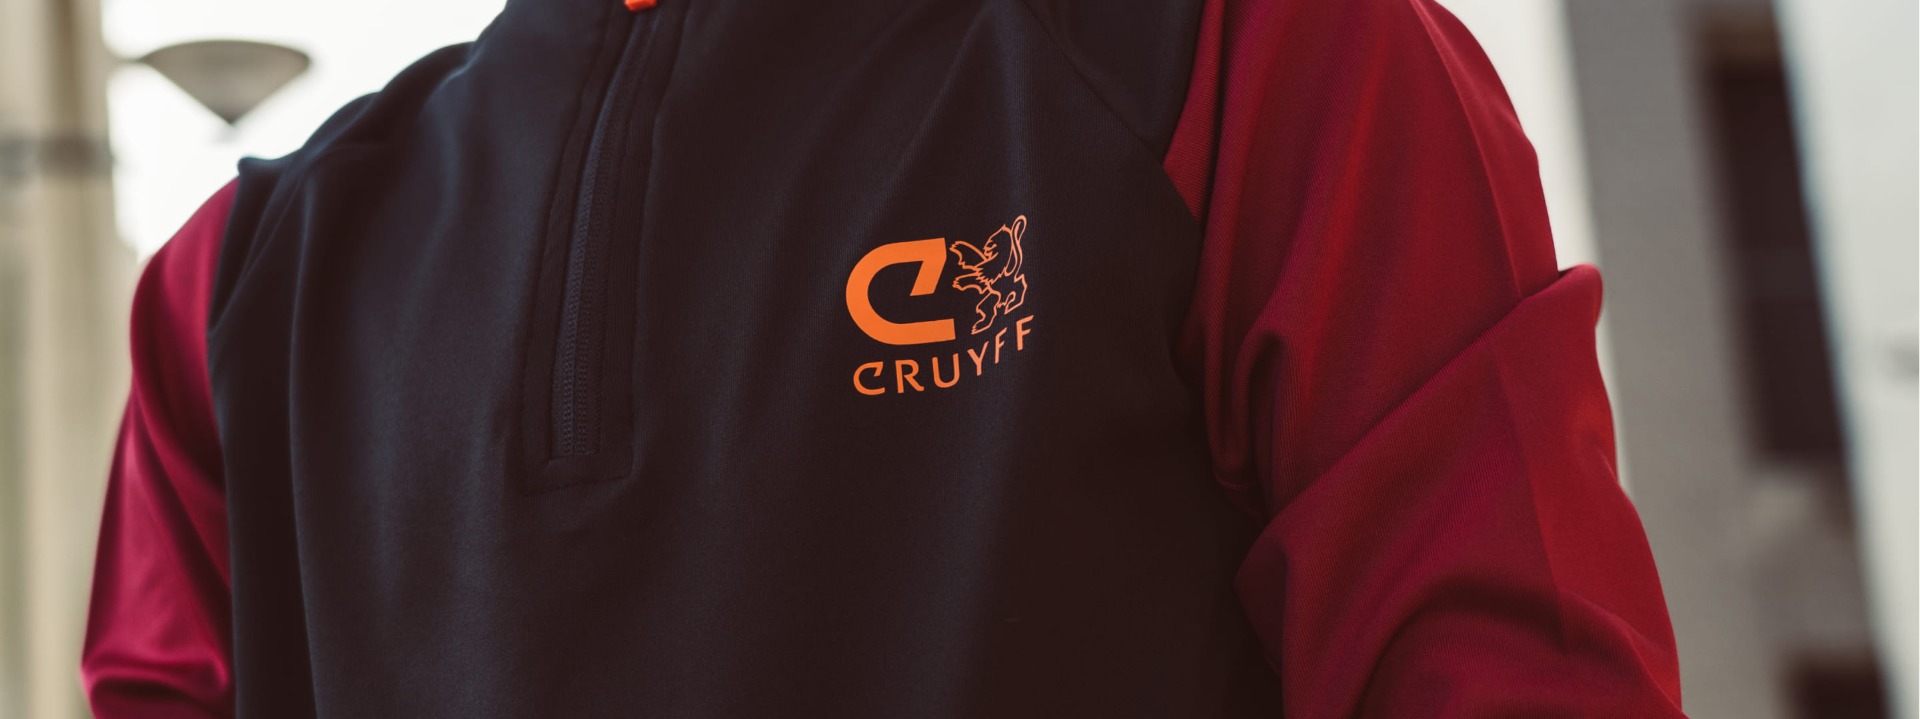 20210908-slider-header-Cruyff-collectie-3.jpg